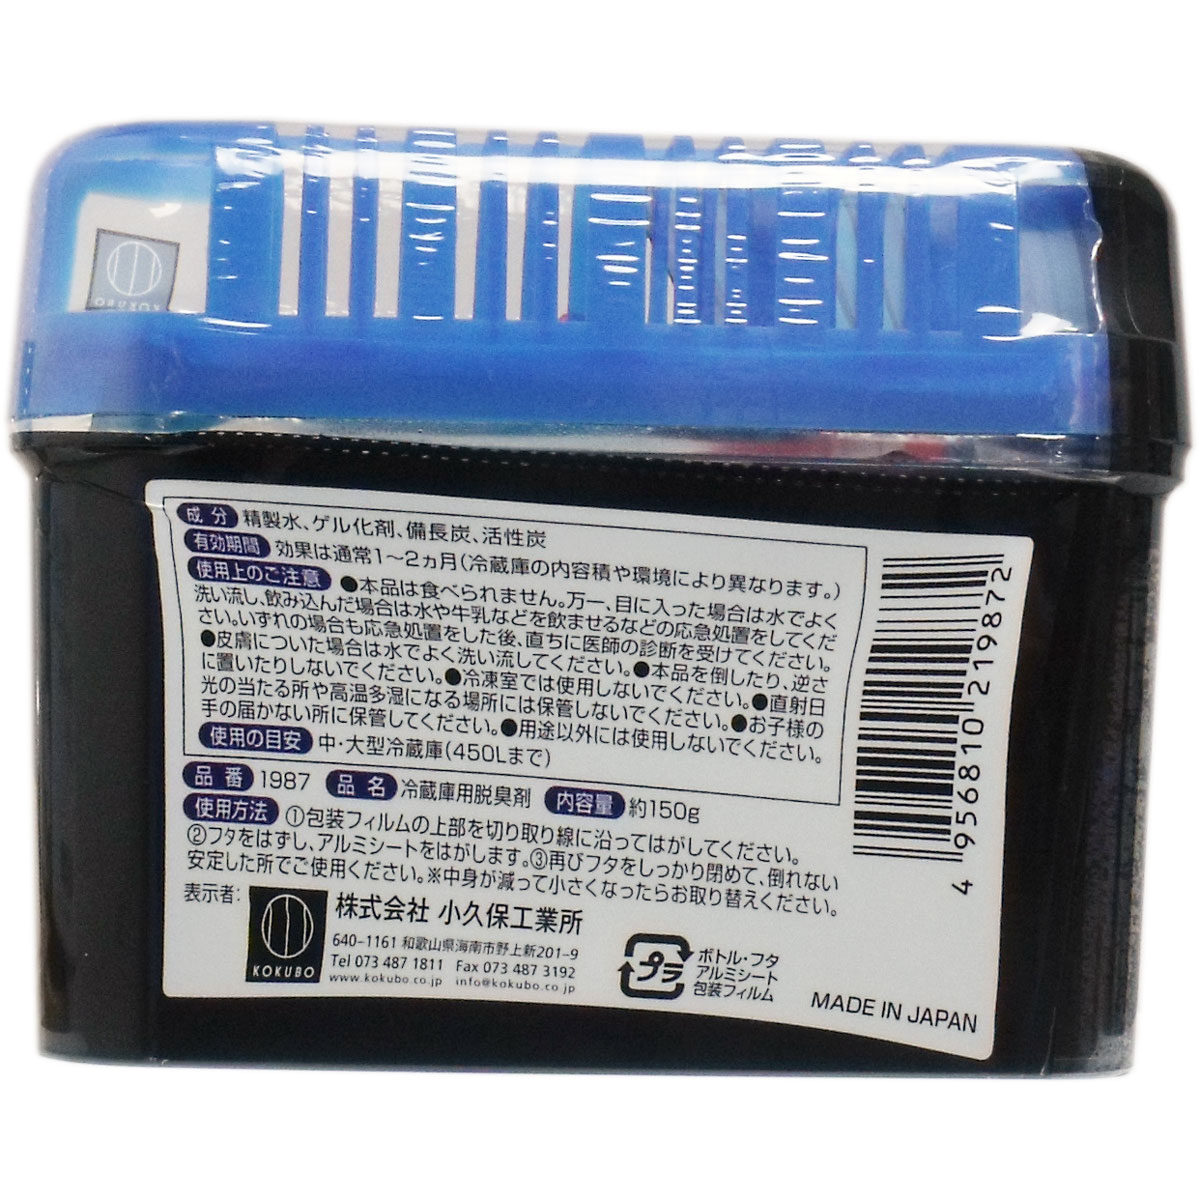 Combo 02 hộp sáp khử mùi tủ lạnh + 01 hộp sáp thơm để phòng - Hàng nội địa Nhật Bản